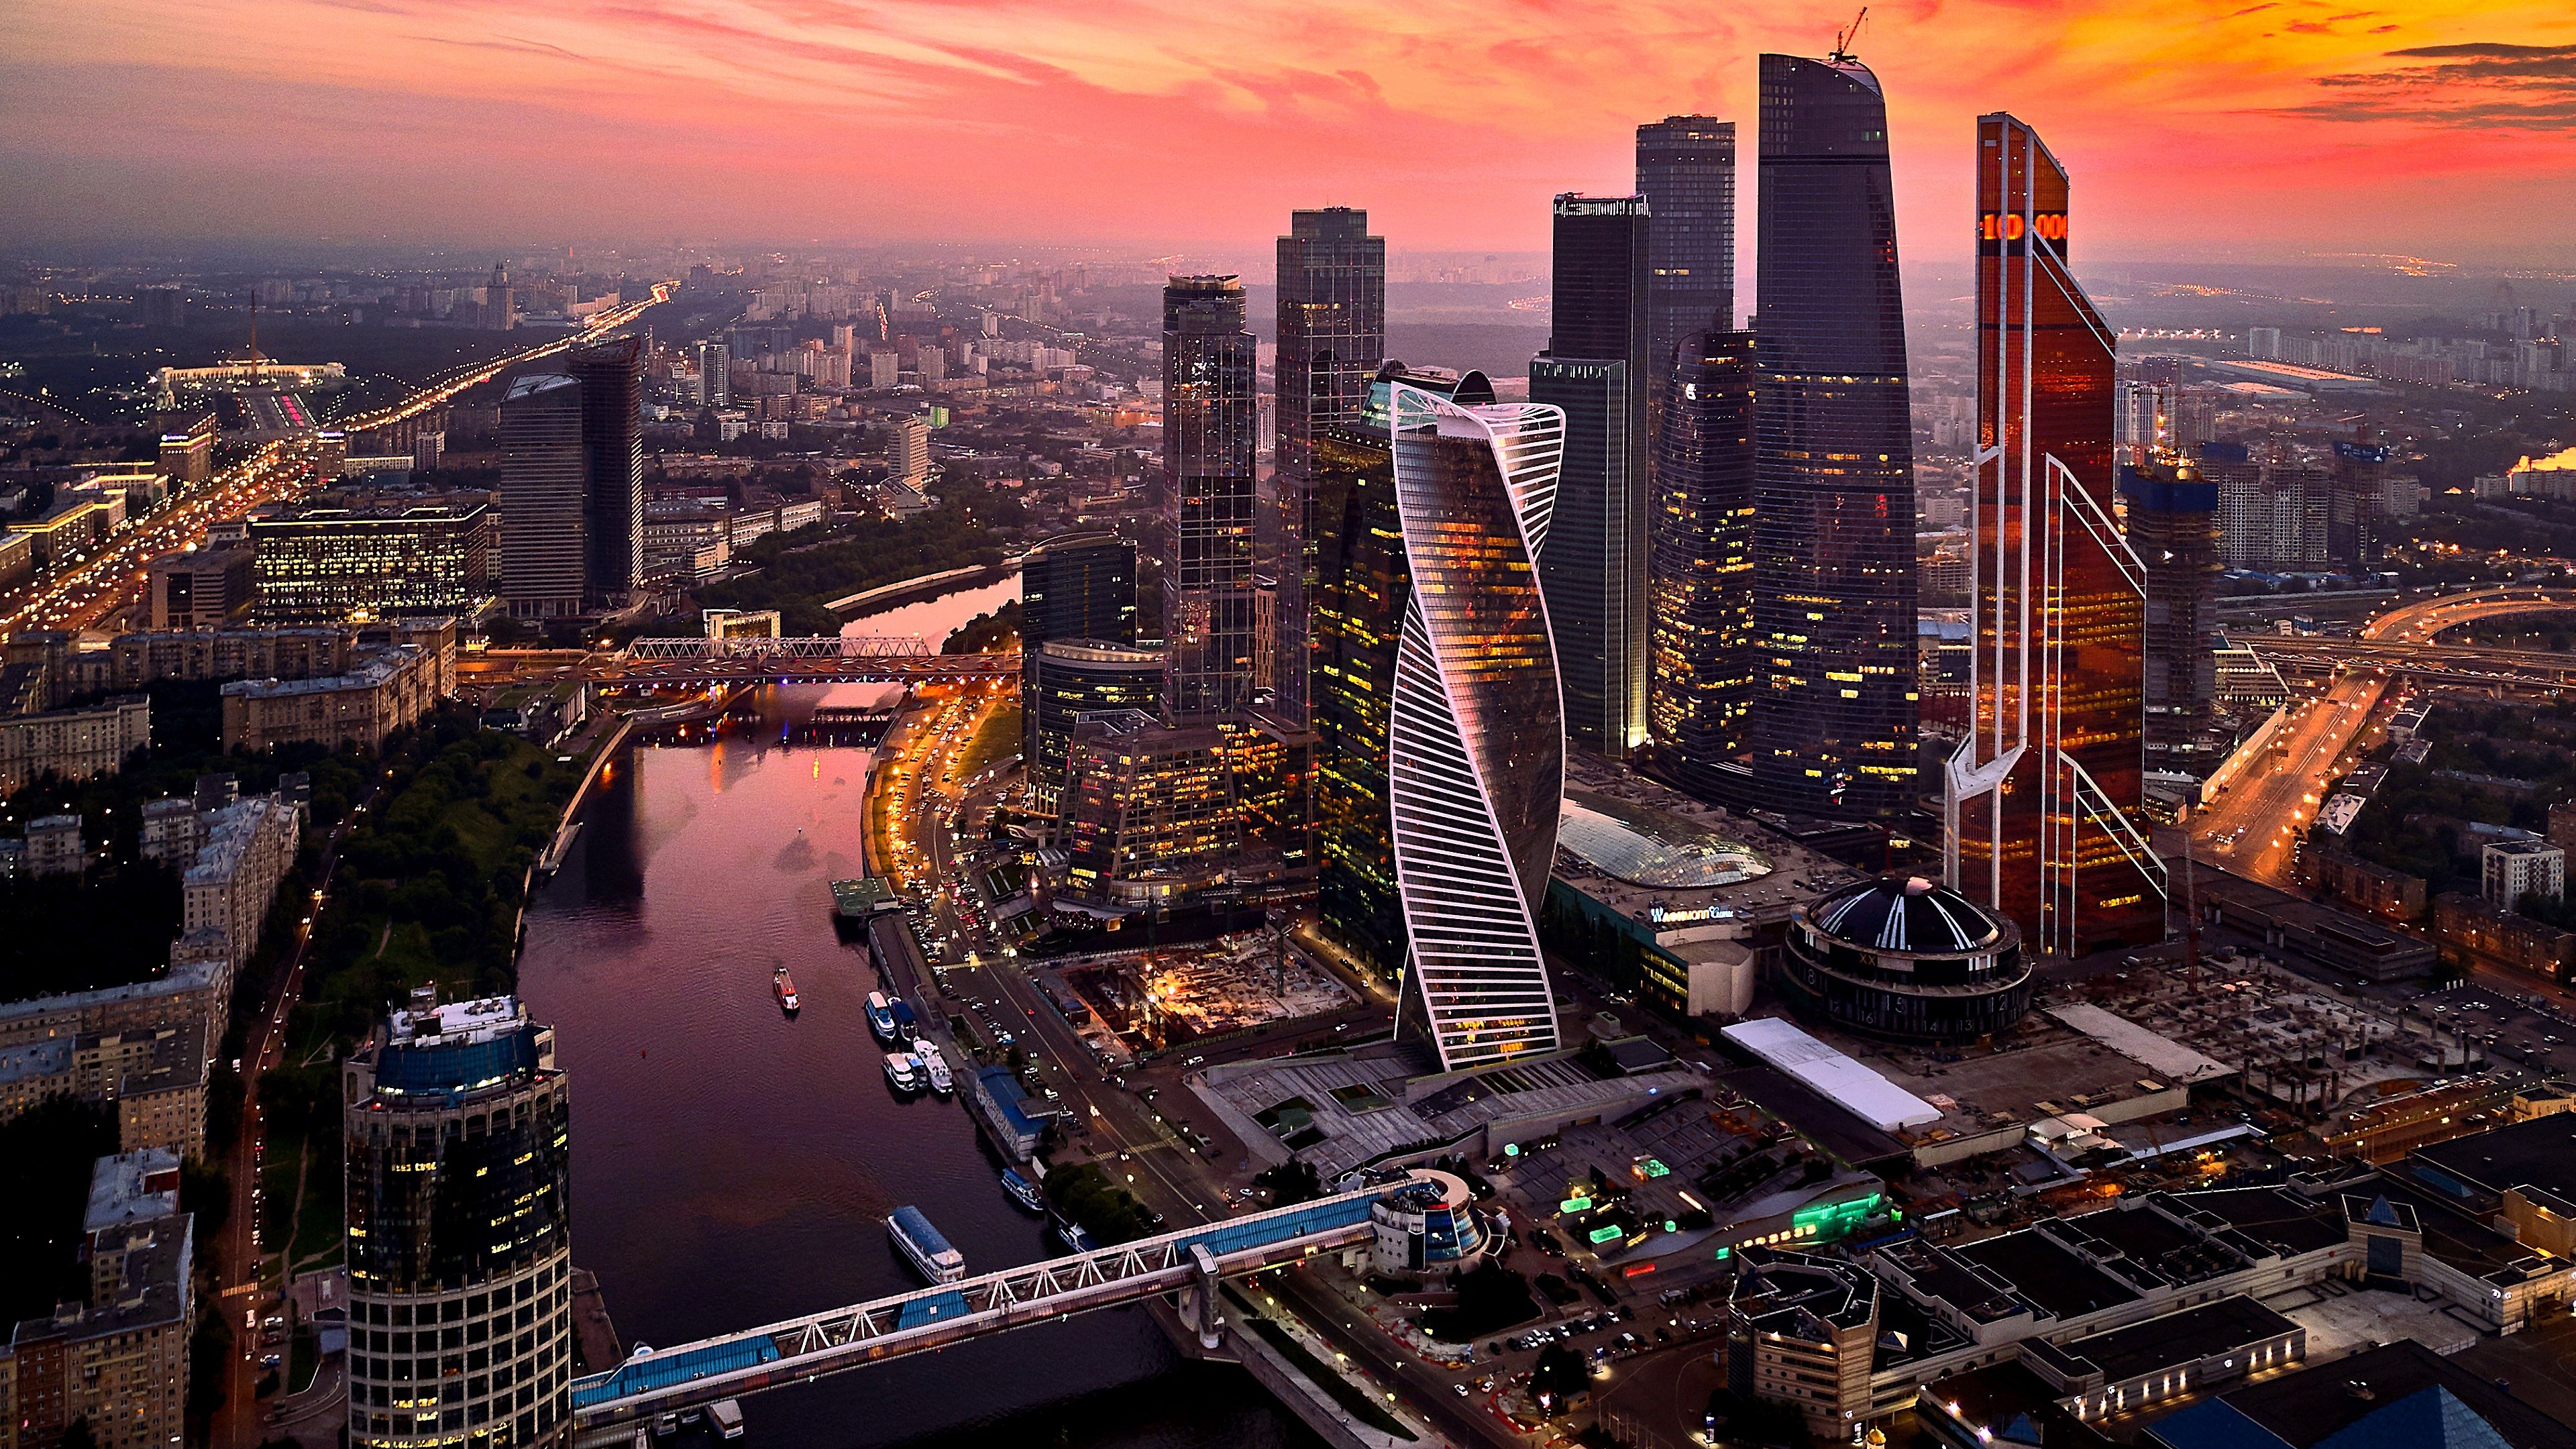 3840x2160, Moscow International Business Center Russia - Ultra Hd Business Wallpaper 4k , HD Wallpaper & Backgrounds